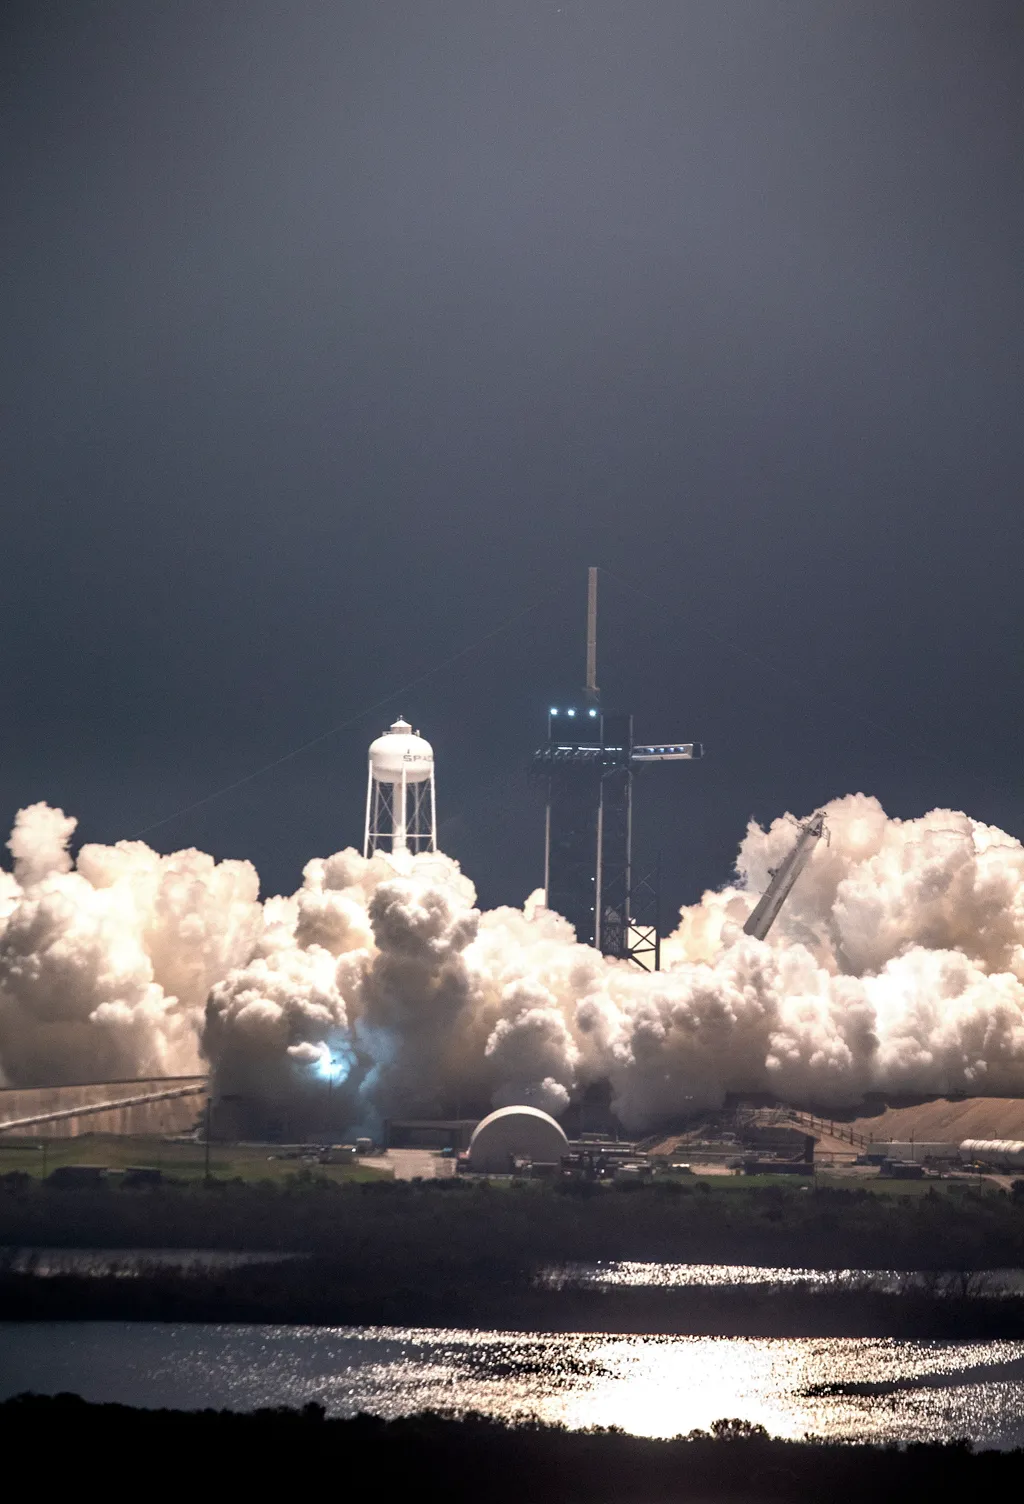 Felbocsátják a SpaceX amerikai űrkutatási magánvállalat Falcon 9 hordozórakétájával összekapcsolt Endeavour űrhajót 